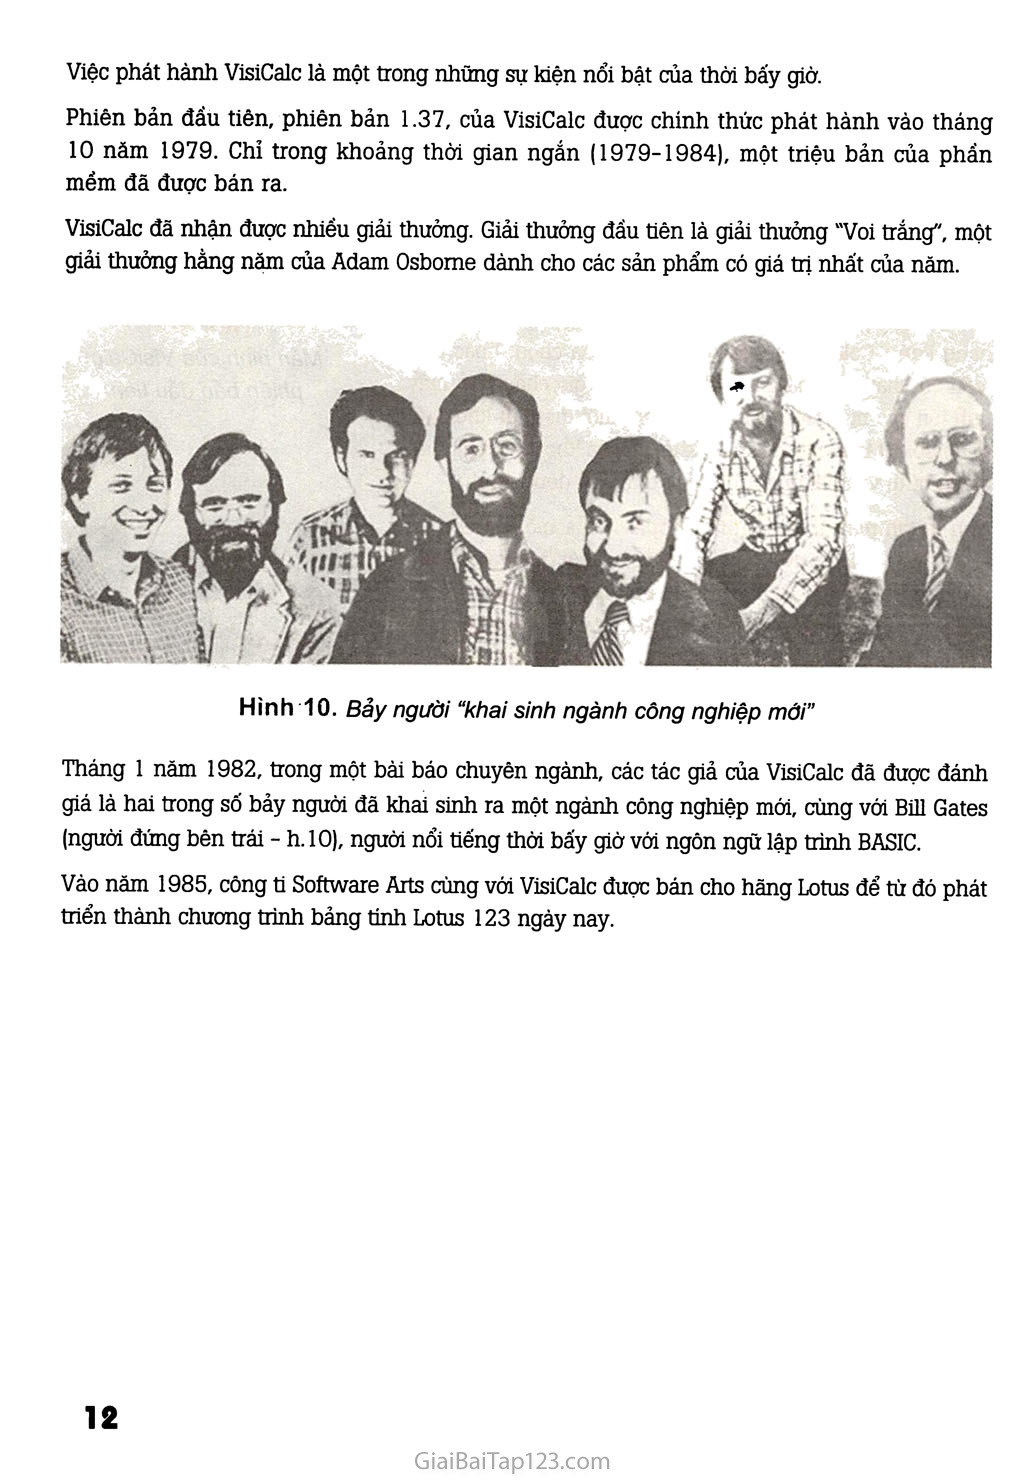 Bài đọc thêm 1. Chuyện cổ tích về VisiCalc trang 3